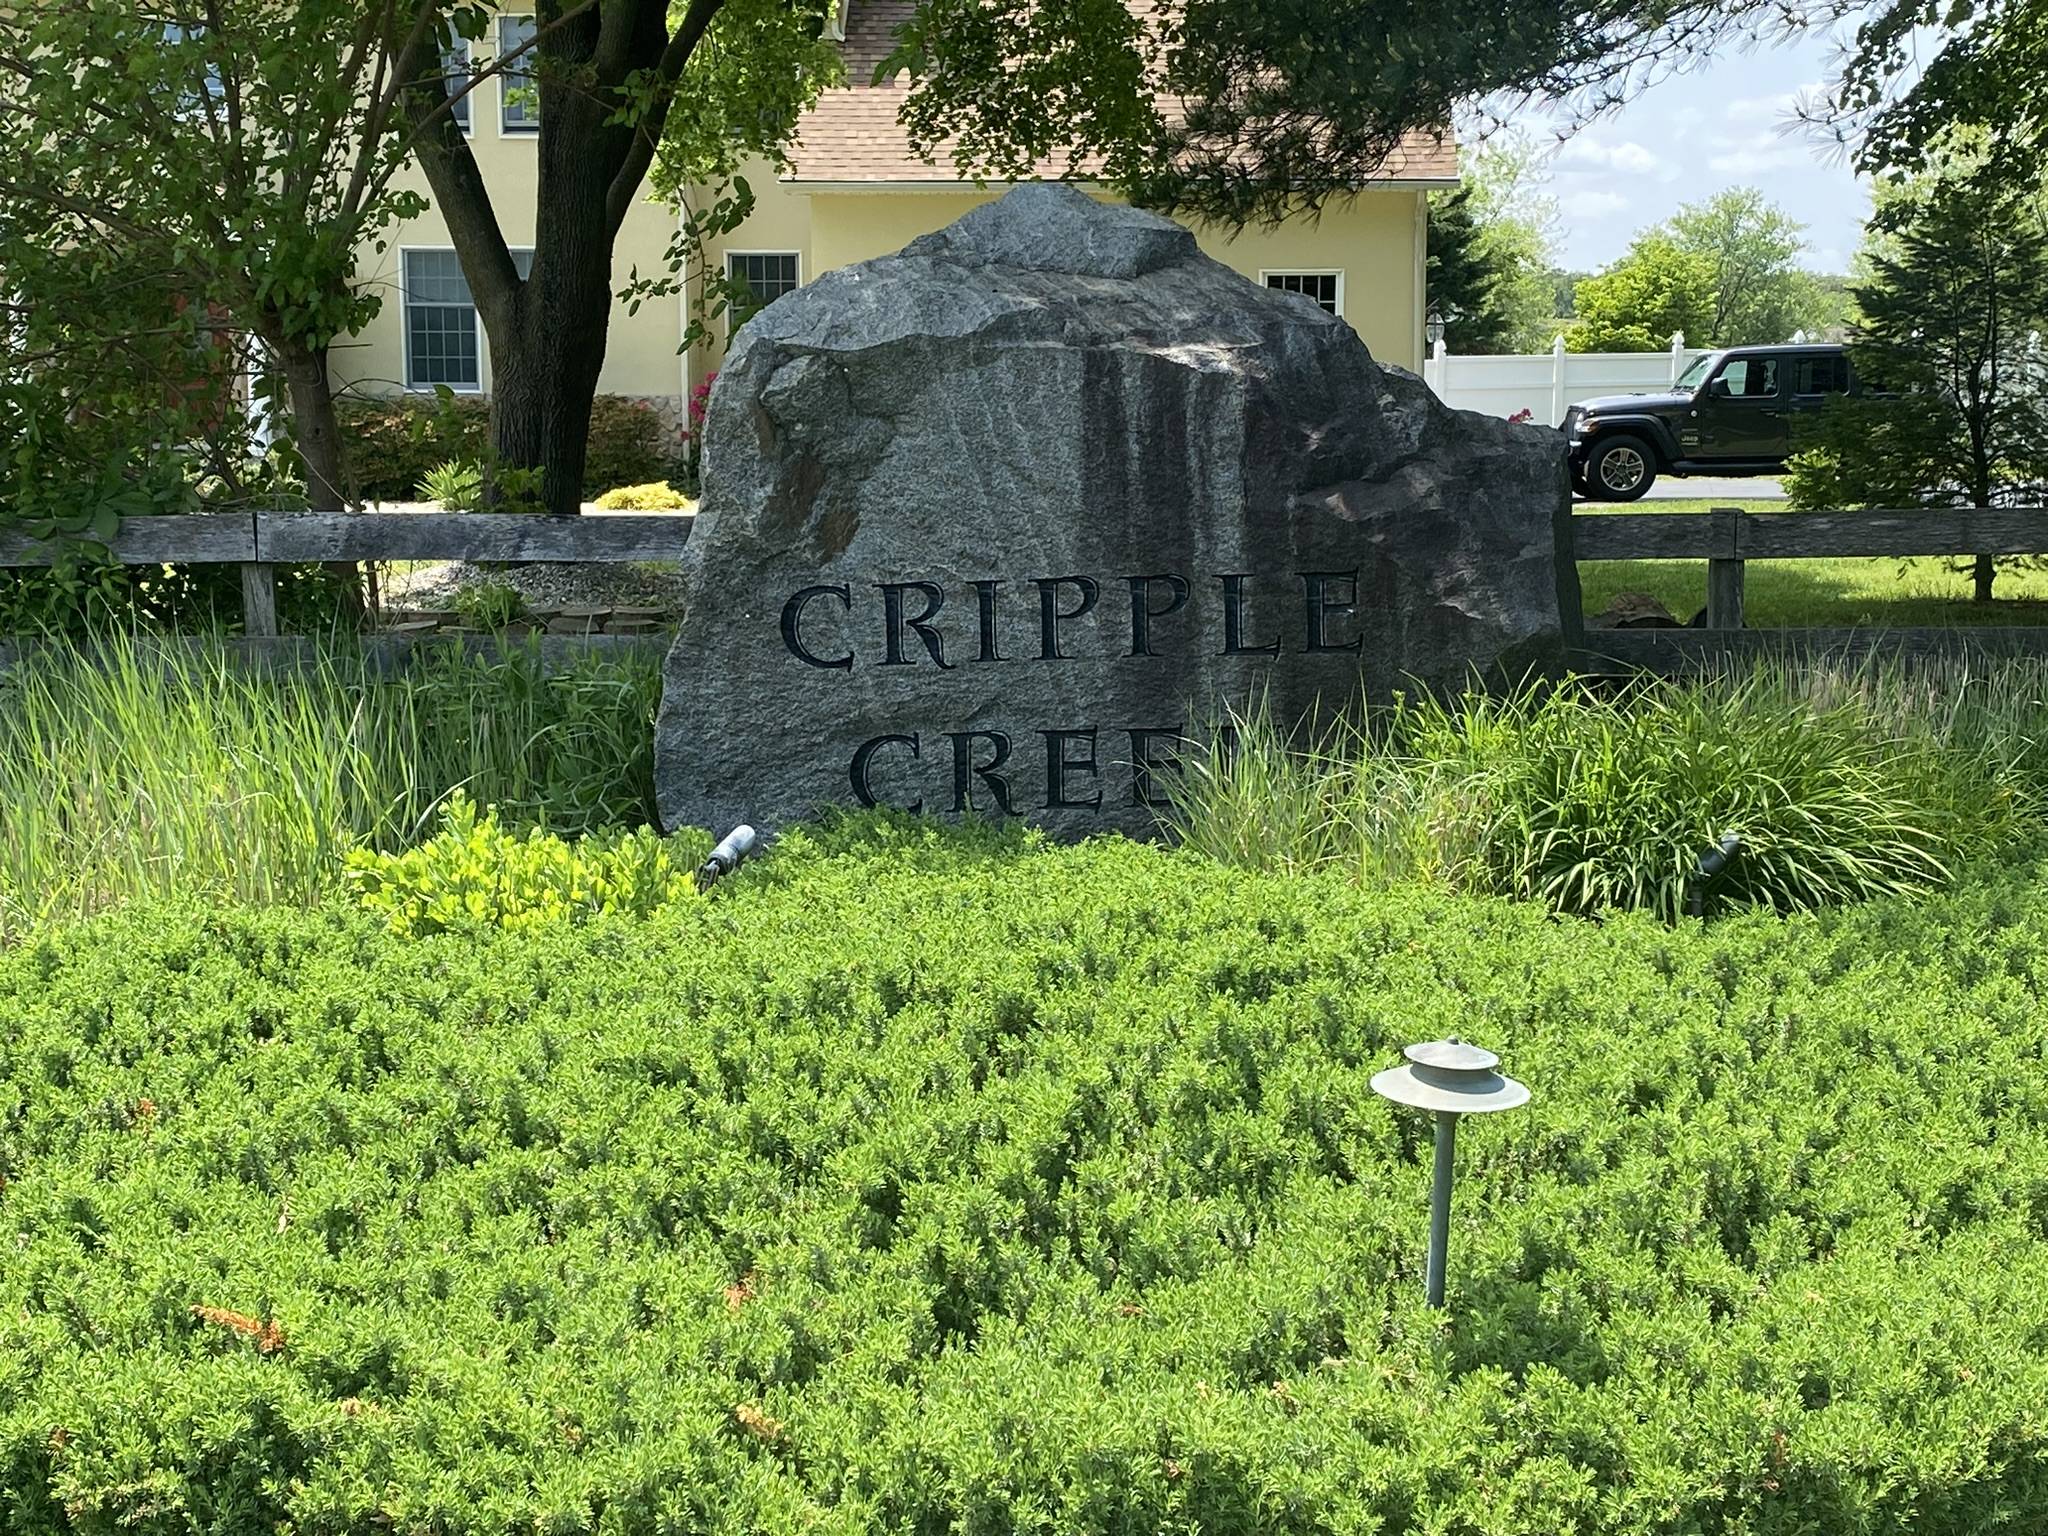 Cripple Creek